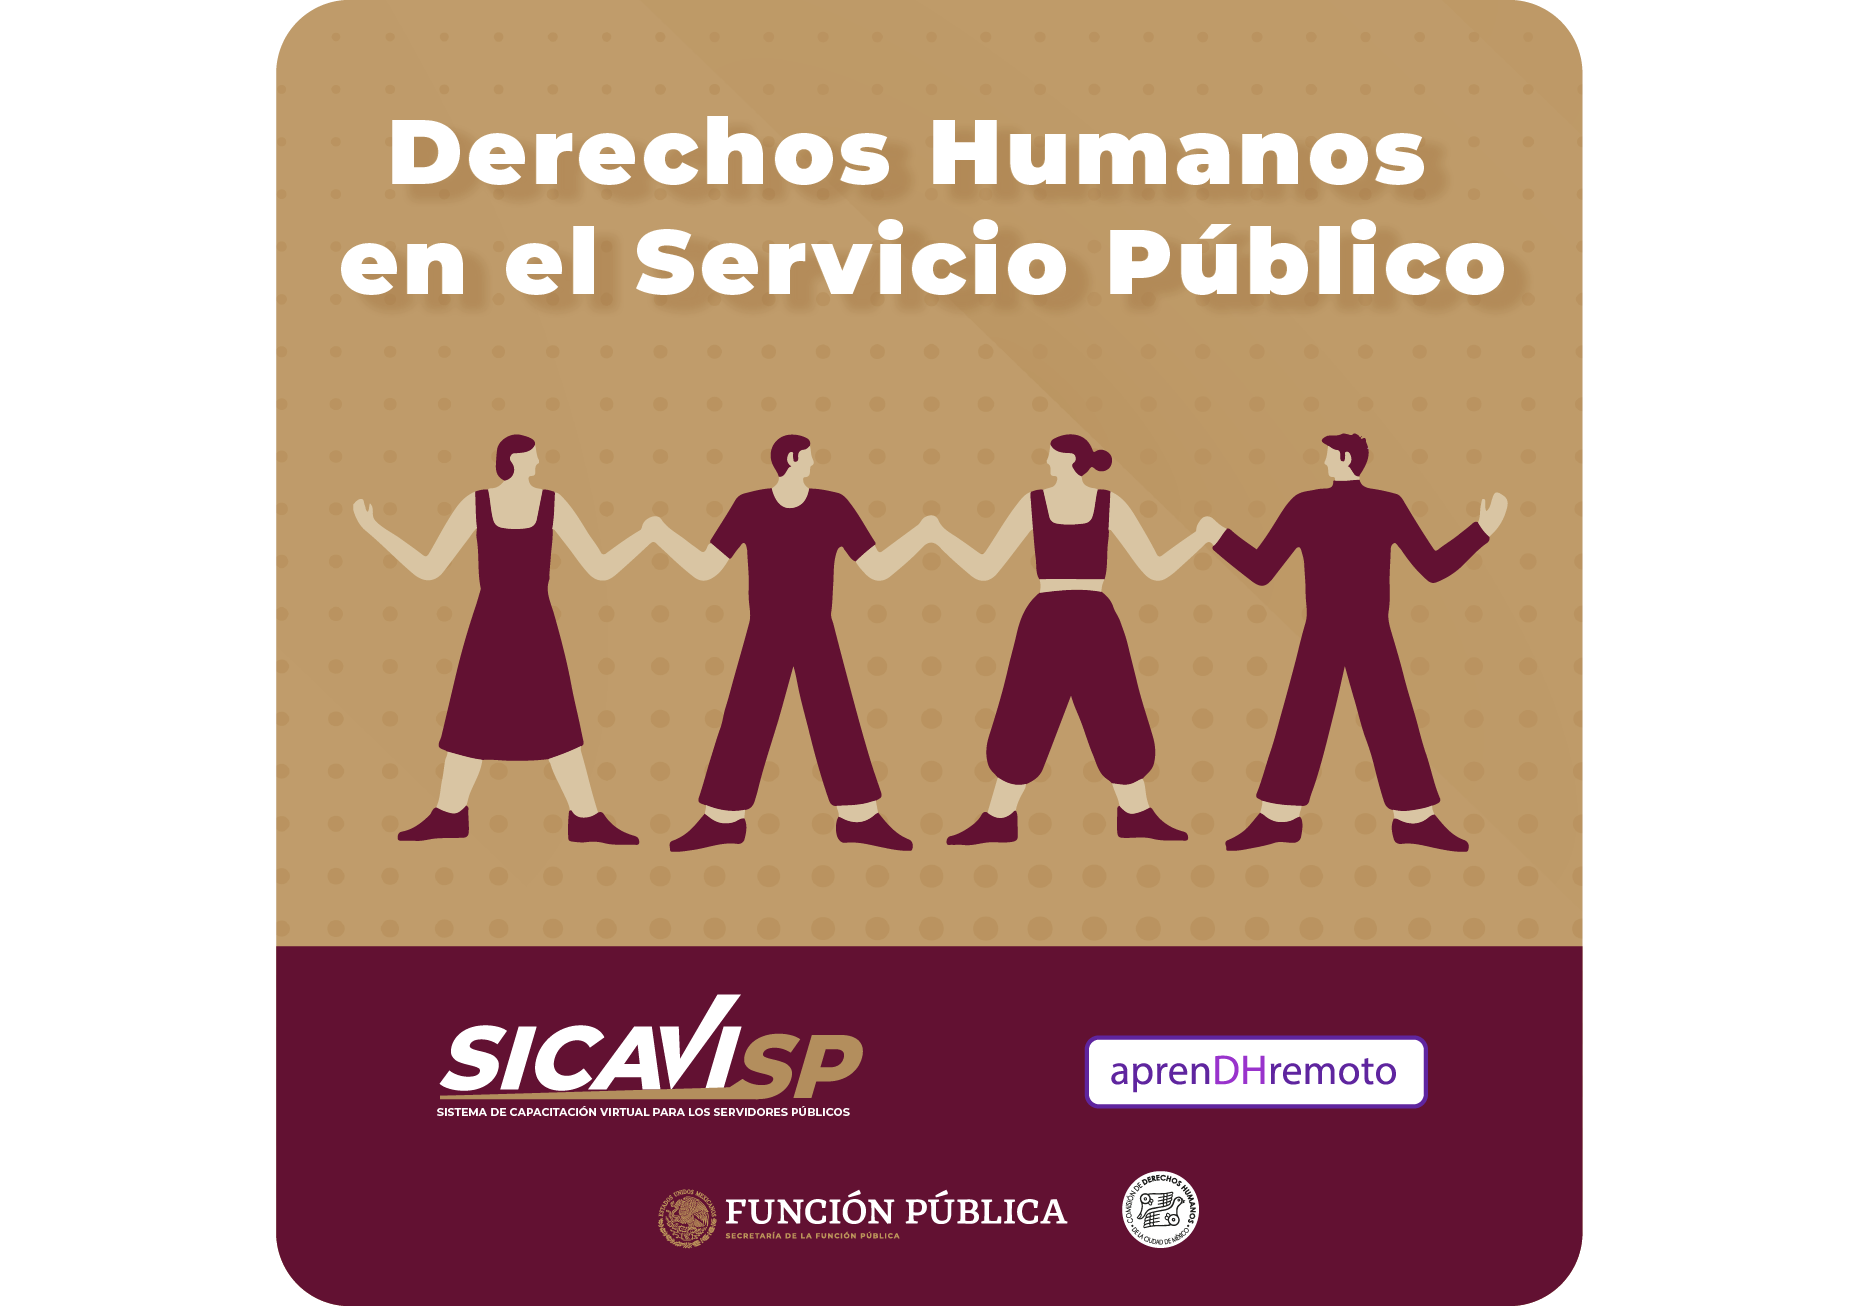 Derechos humanos en el servicio público